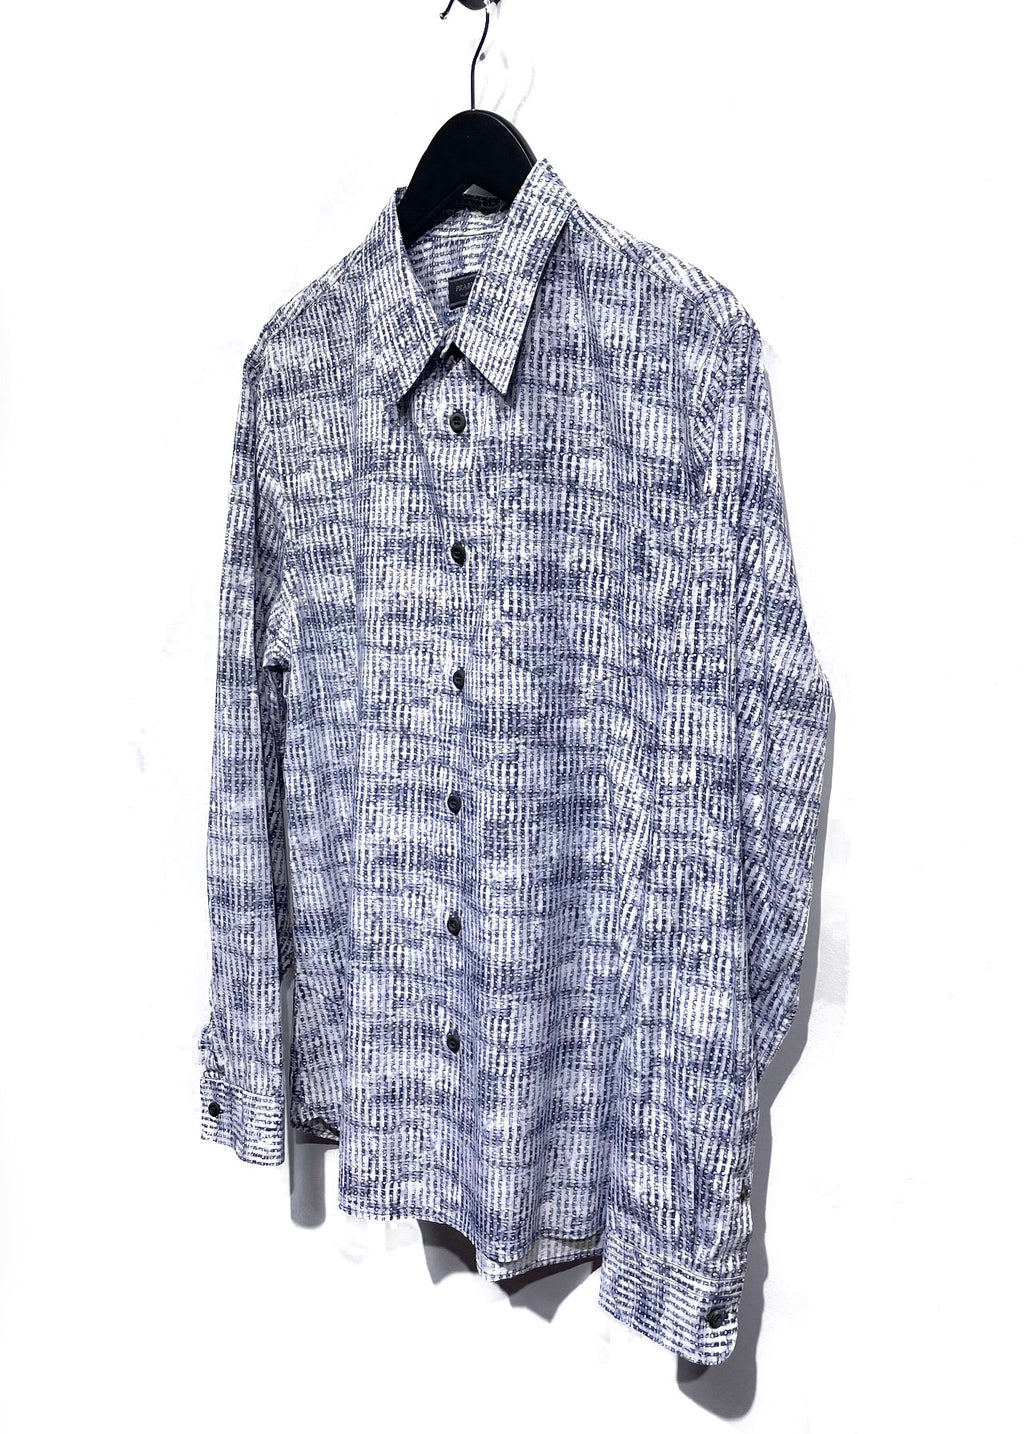 Prada Grey Abstract Patterns Pocketed Shirt